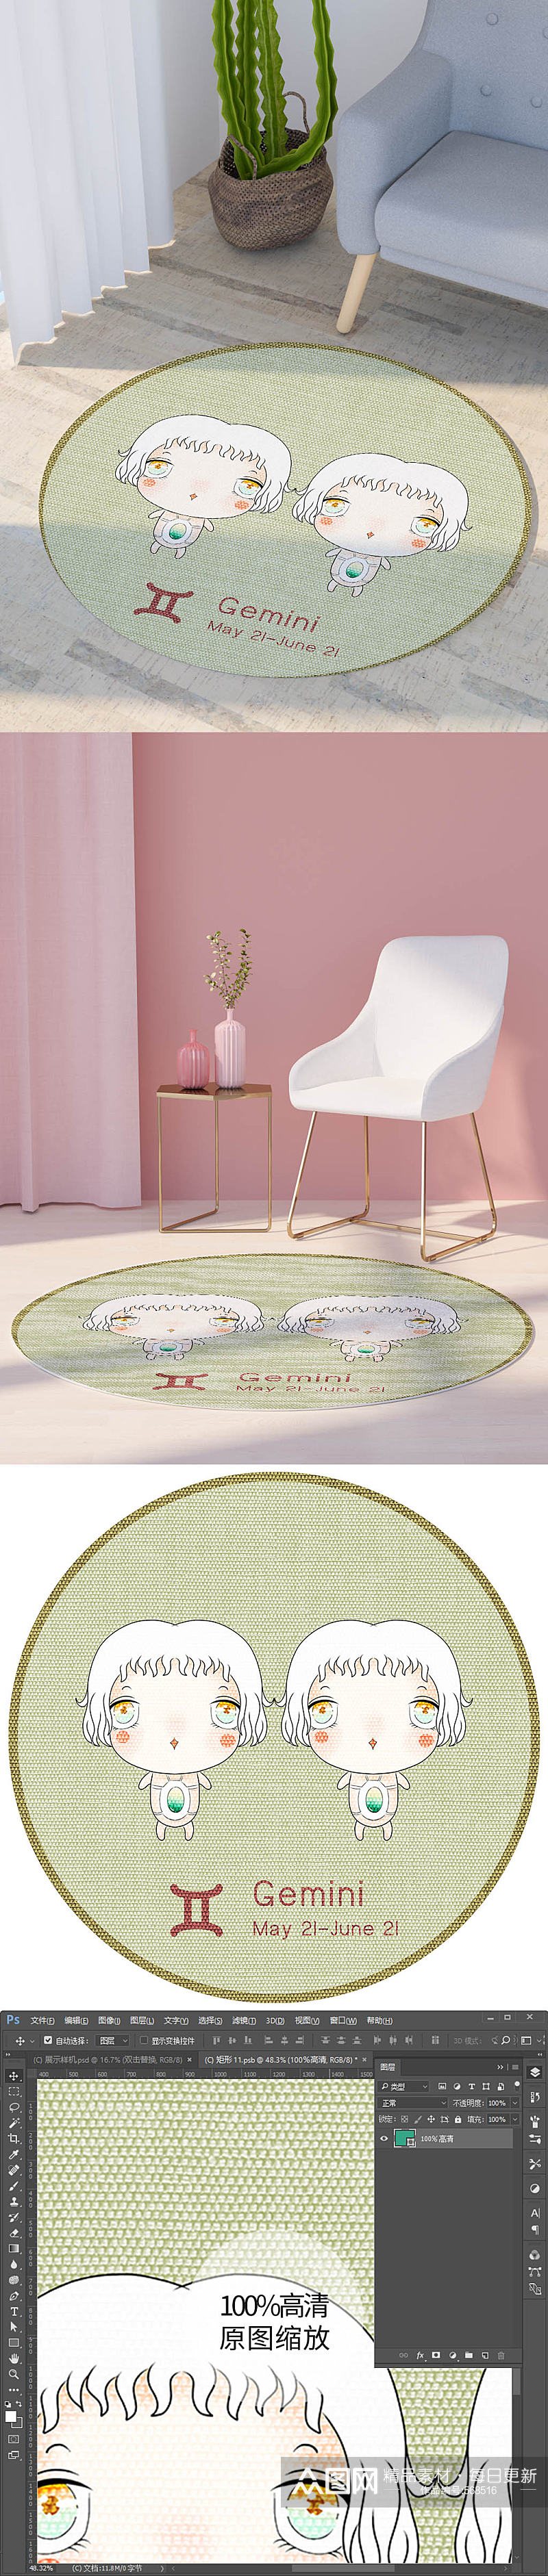 现代卡通绿色双子座文艺圆形地毯图案素材